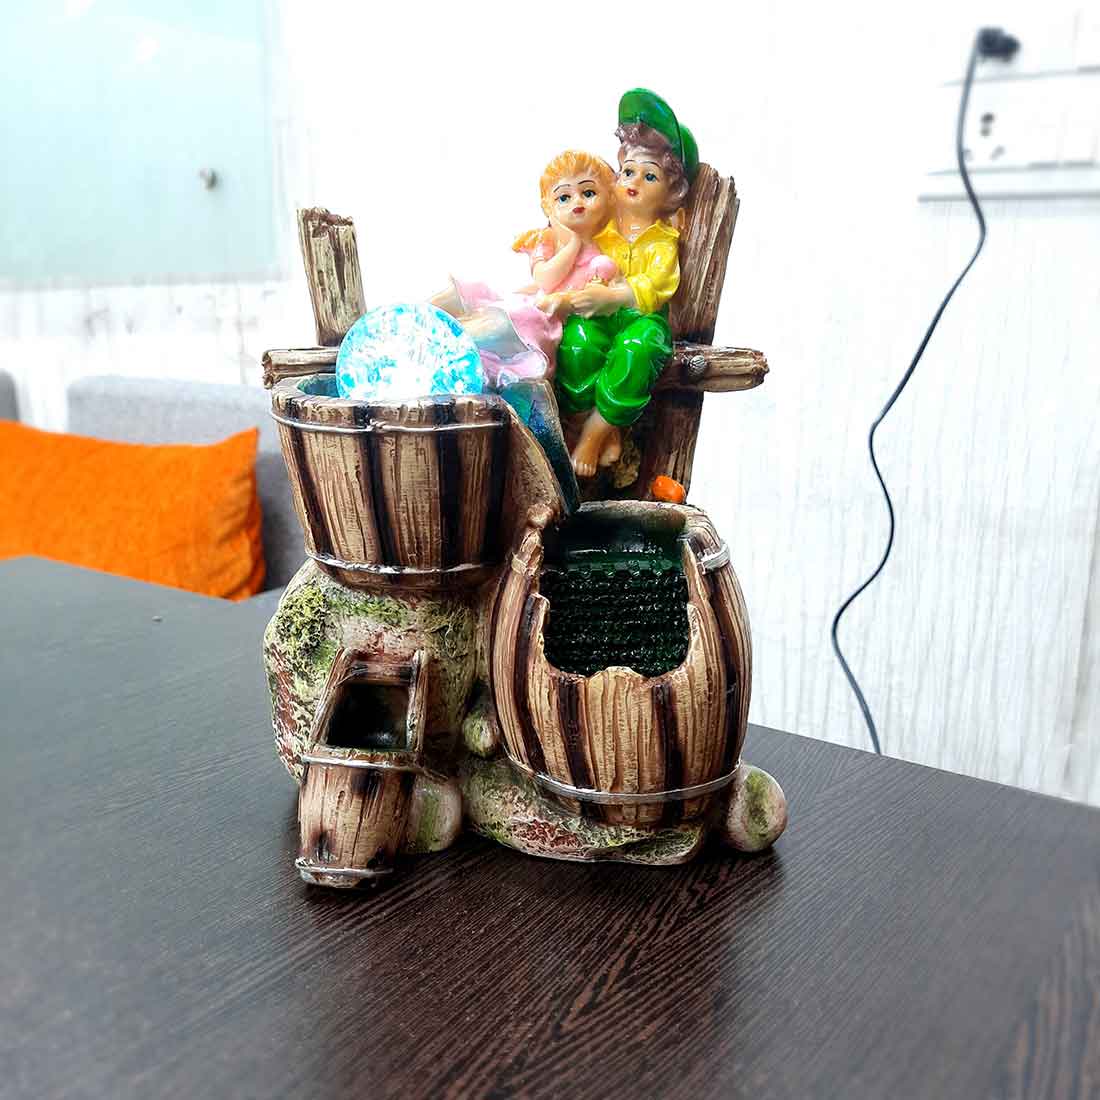 Indoor Table Top Water Fountain - for Vastu, Good Luck & Home Decor -10 Inch - ApkaMart